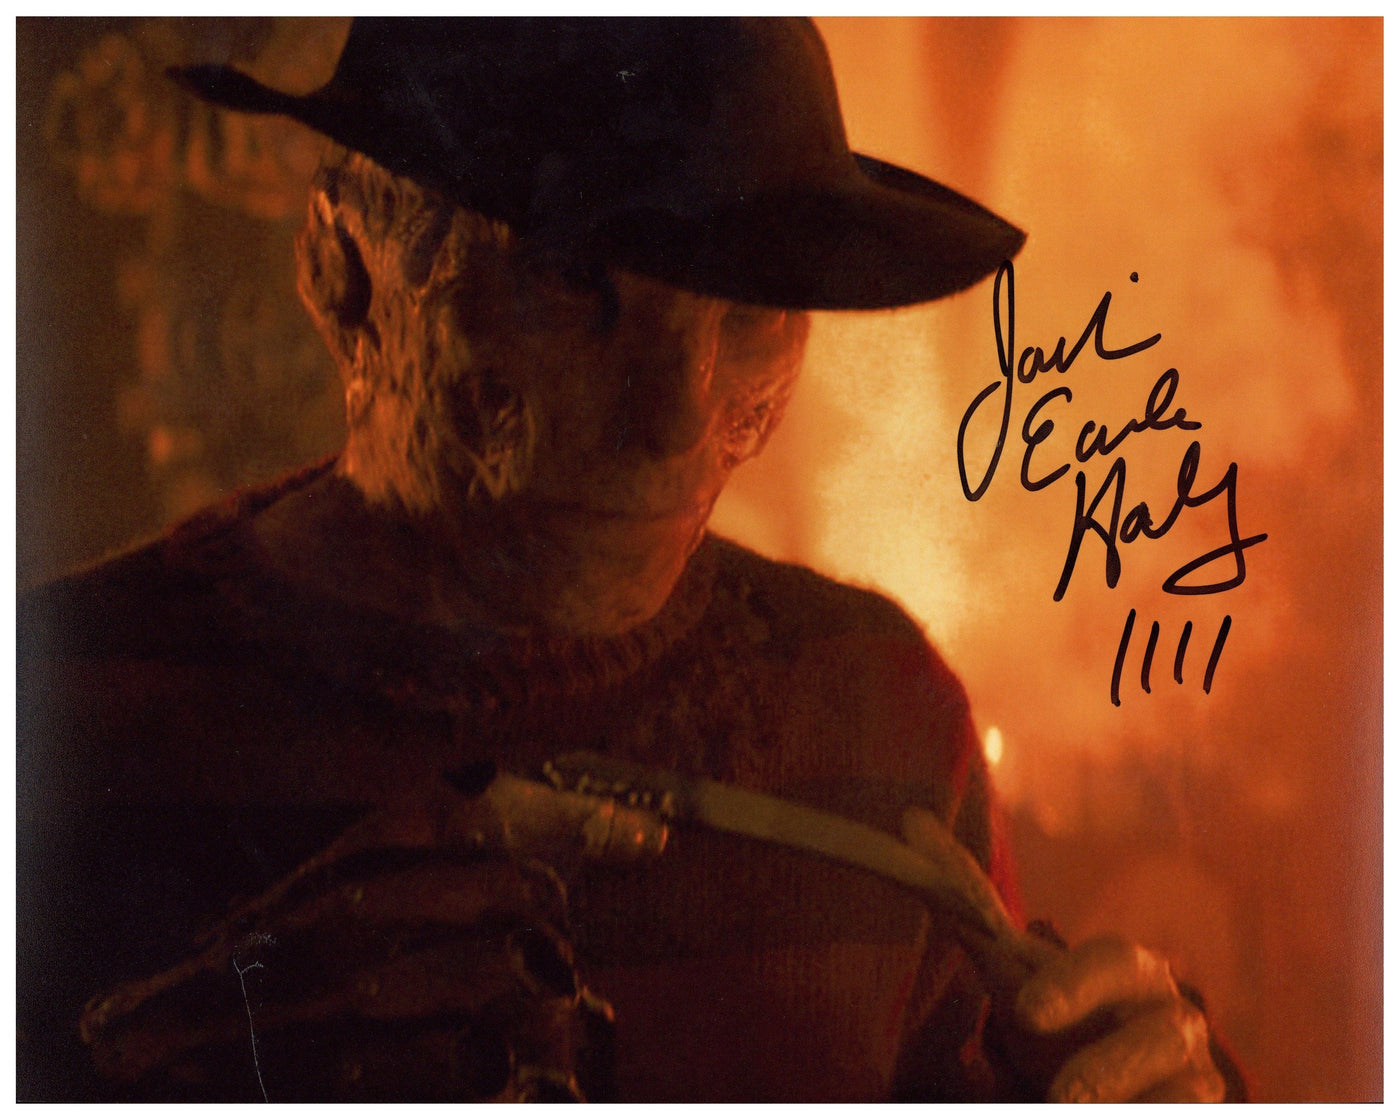 Jackie Earle Haley Signed 8x10 Photo A Nightmare on Elm Street Autographed JSA COA 2